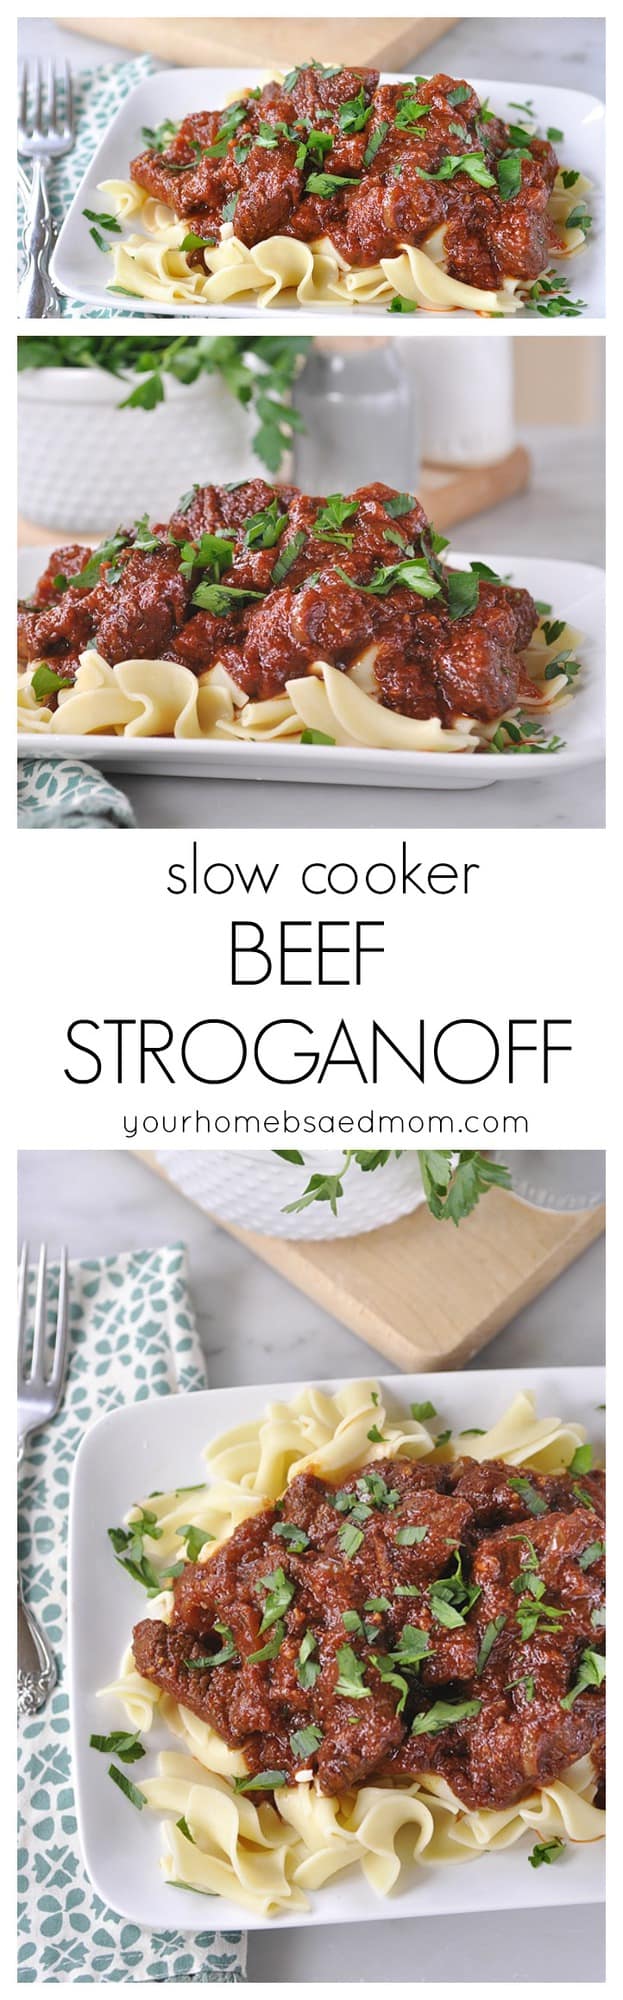 slow cooker beef stroganoff 